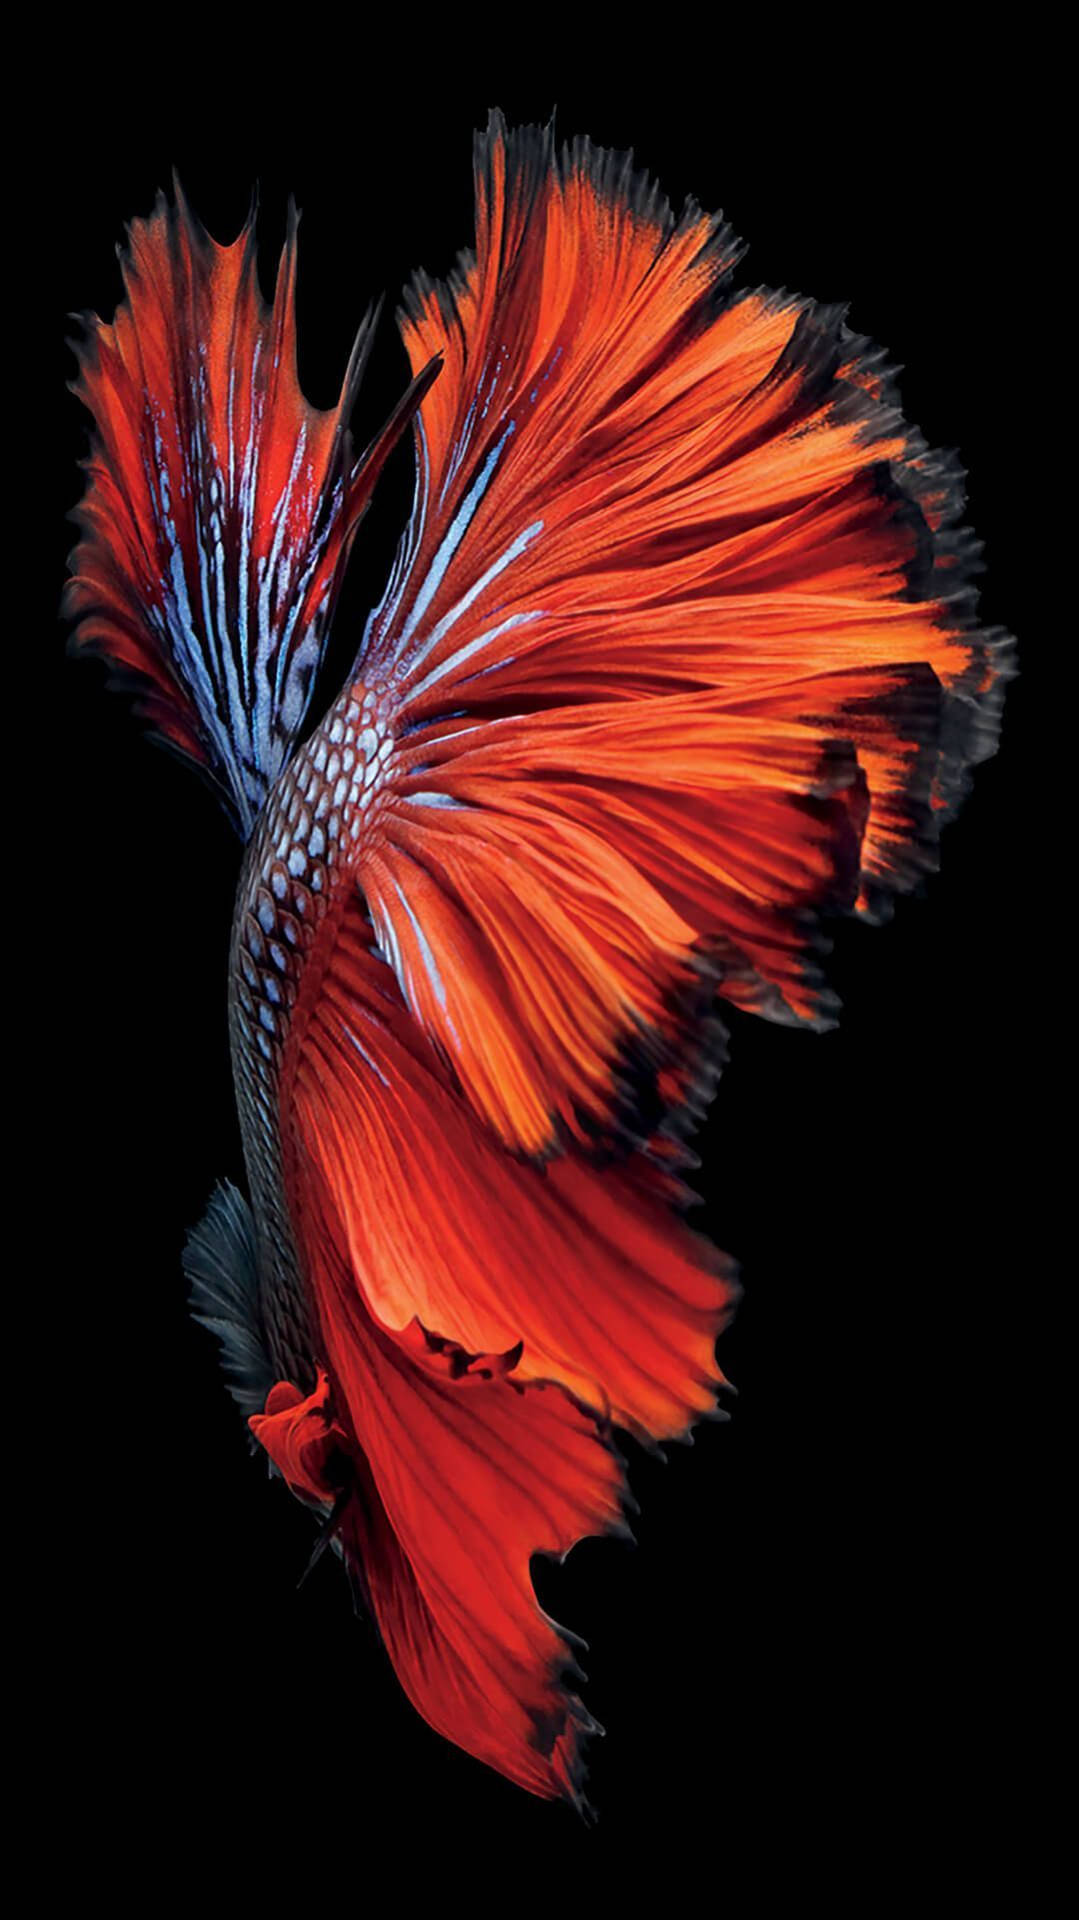 Bạn là một tín đồ của cá và yêu thích sự đa dạng trong thiên nhiên? Tải ngay hình nền cá cho iPhone 7 để tạo cảm giác tươi mới và đầy sinh động trong việc trang trí cho màn hình điện thoại của mình. Hàng vạn bức ảnh cá đẹp mắt đang chờ đón bạn trên trang web của chúng tôi.